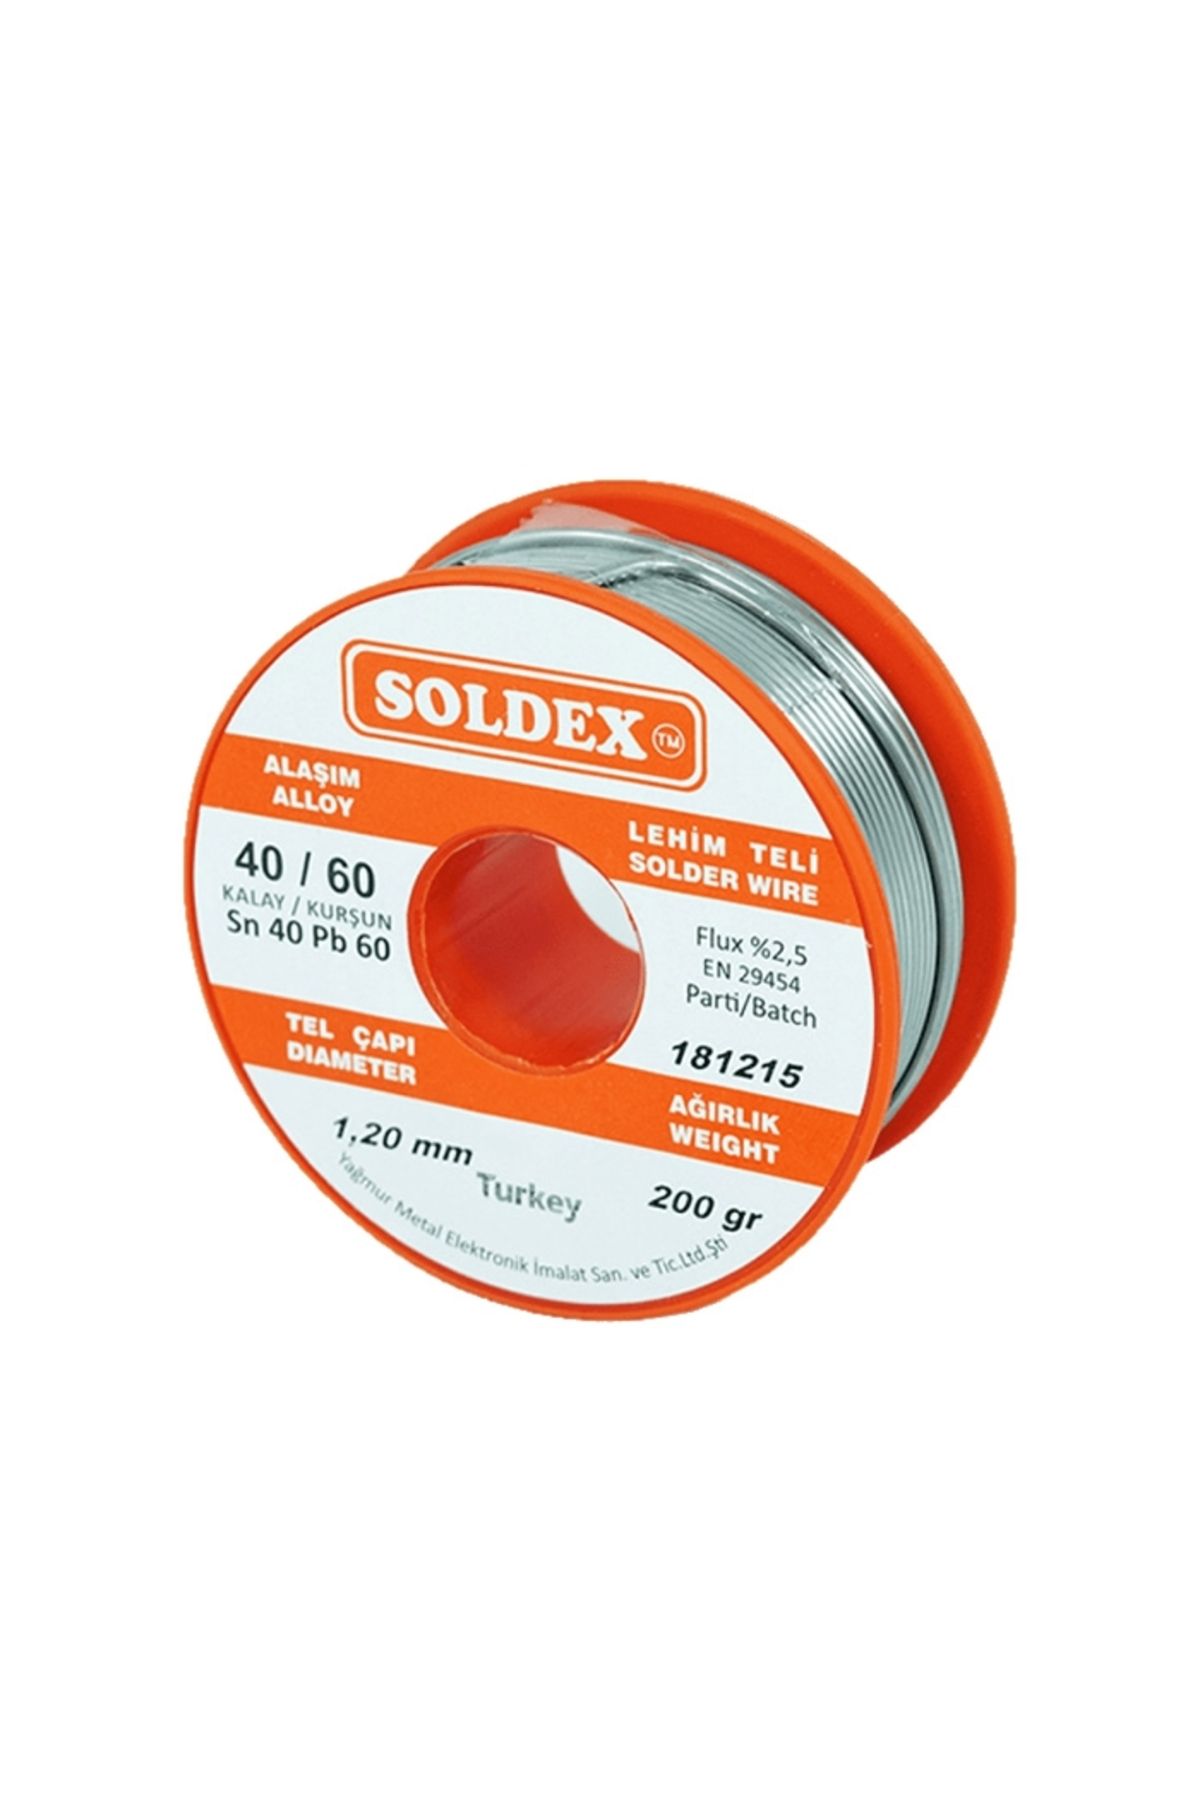 Soldex 40/60 1,60 Mm Lehim Teli 200 gr